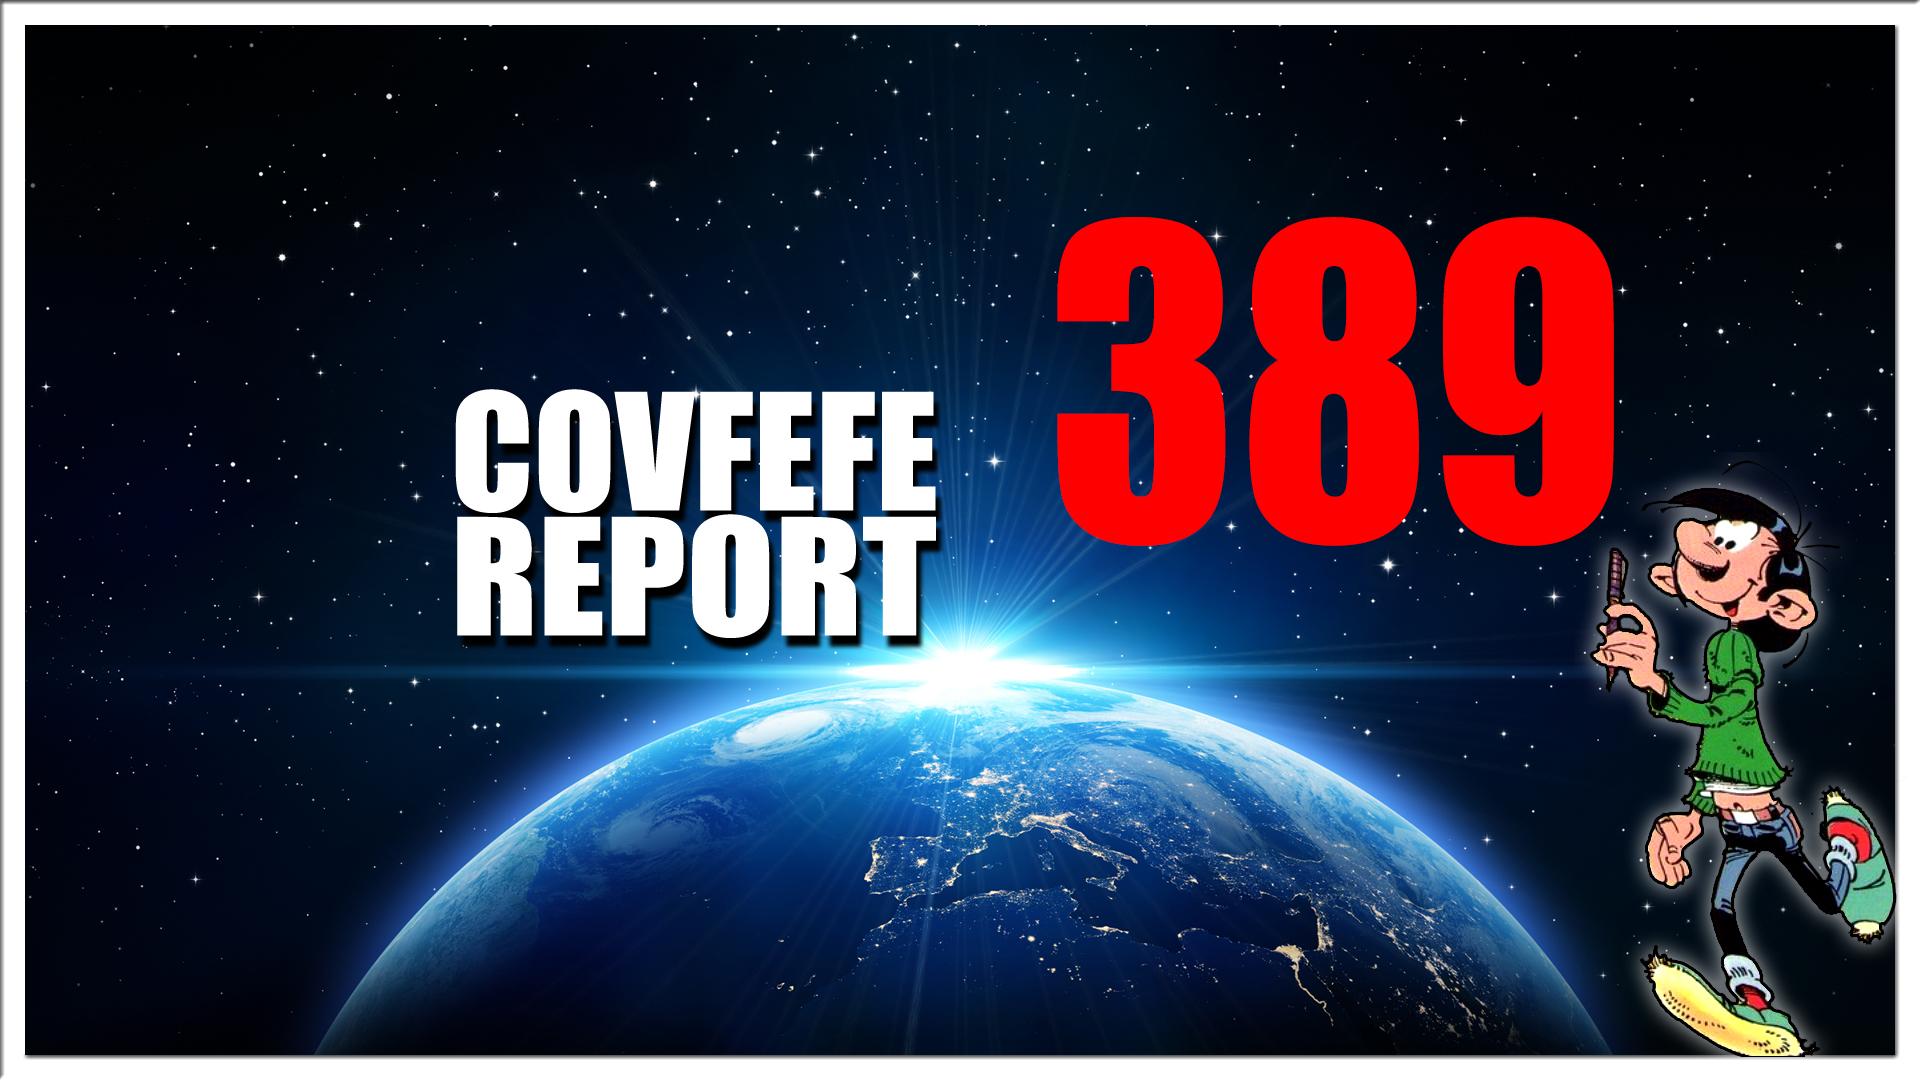 Covfefe Report 389. Impeachtment 3, Heldin Buitenhoeve uit functie gezet, Roelie Post